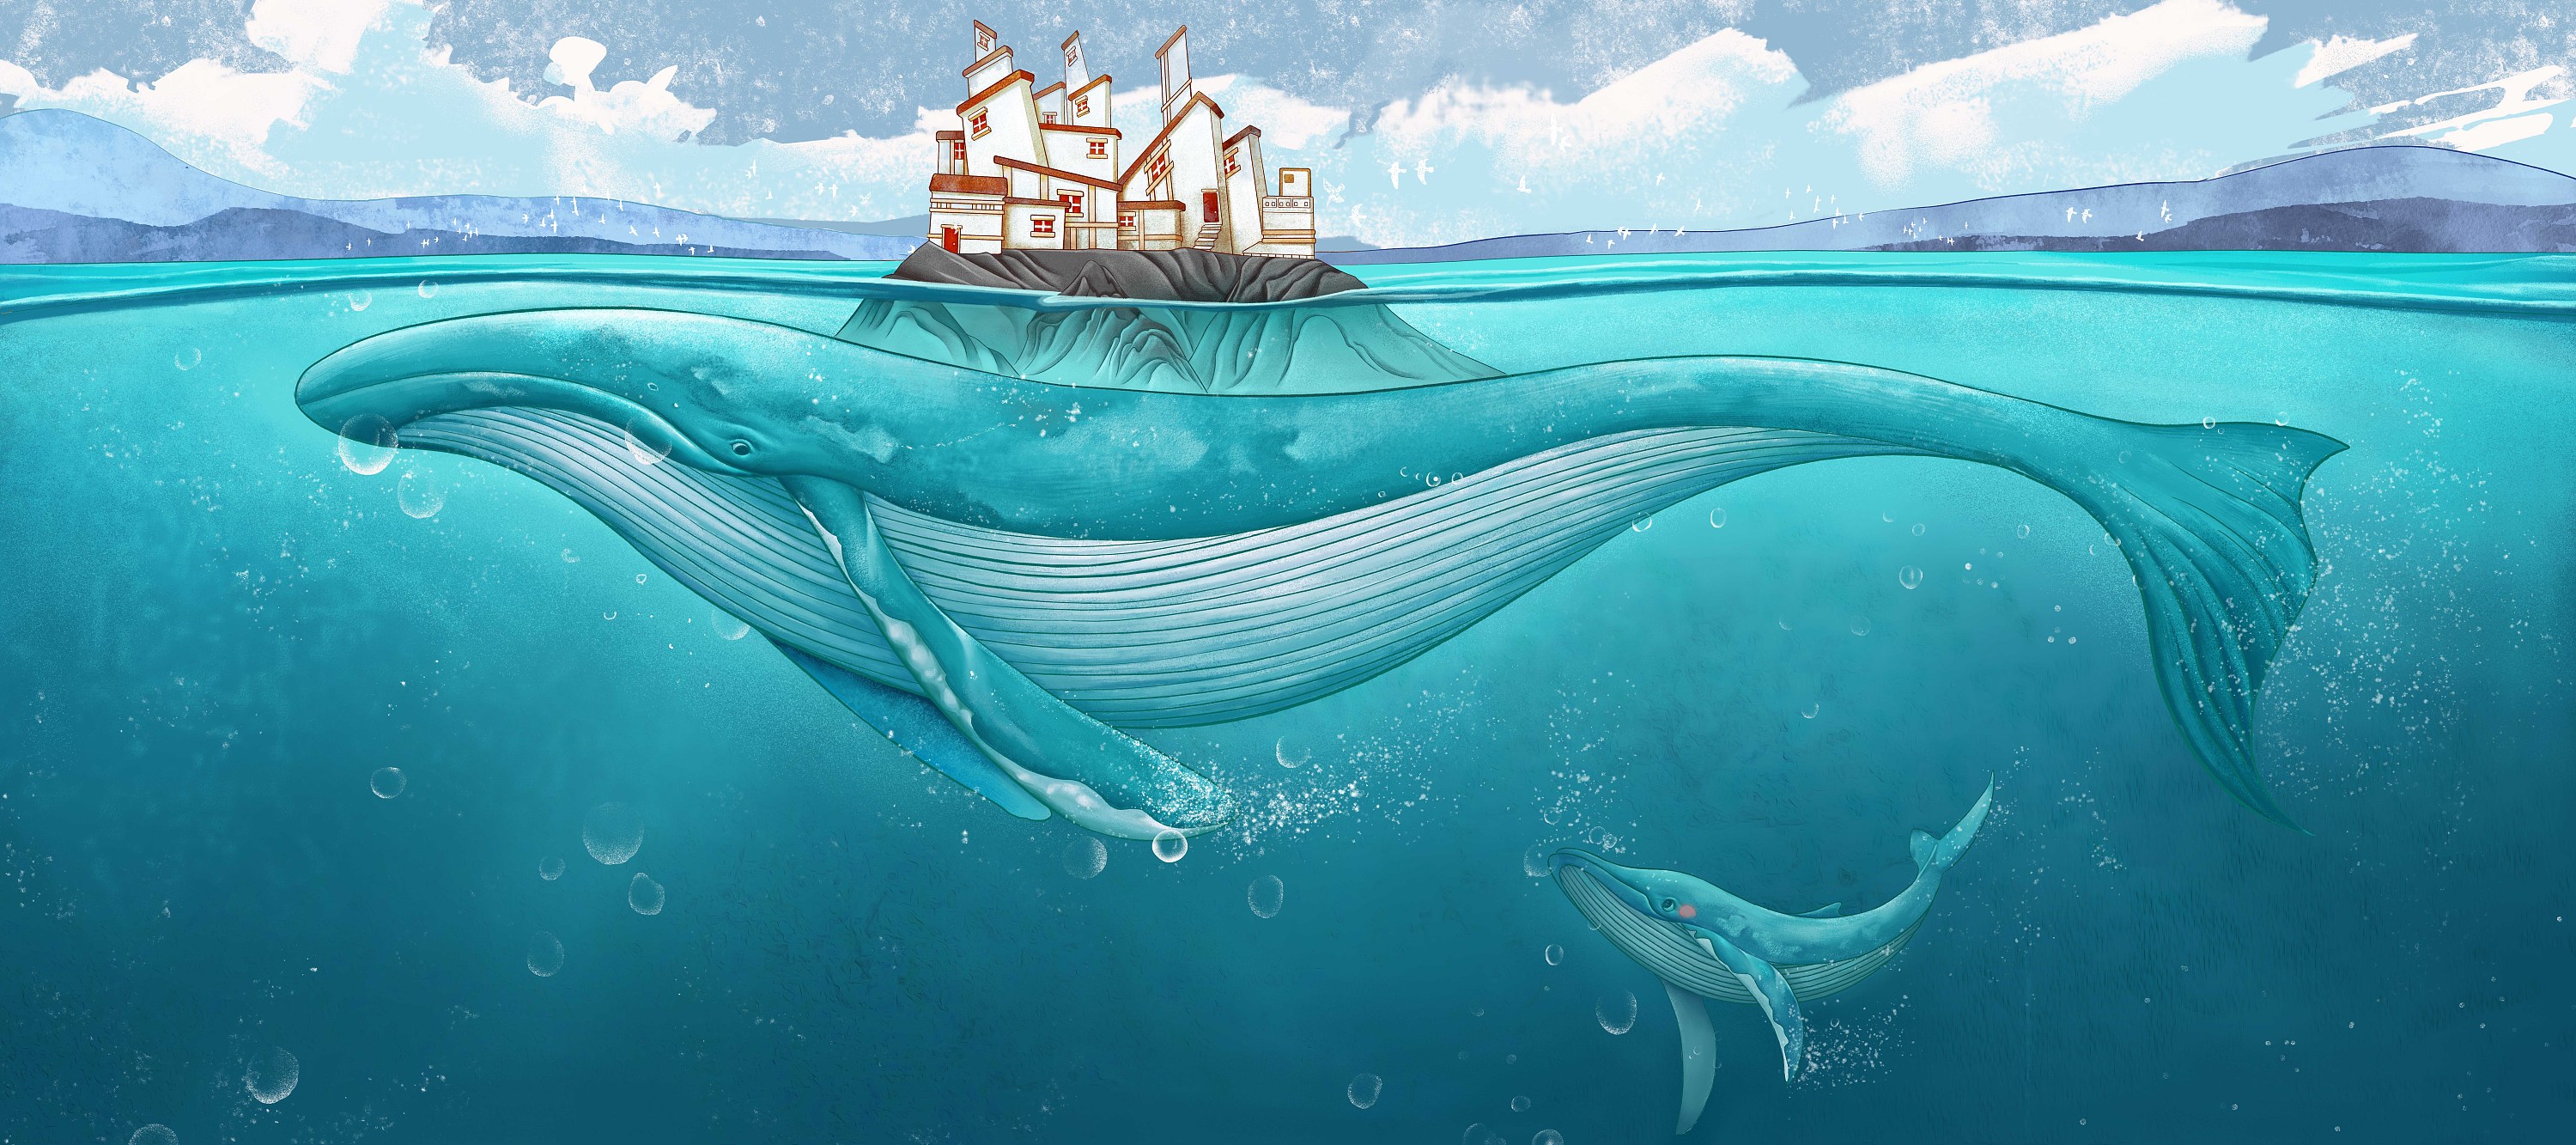 矢量手绘鲸鱼图片素材免费下载 - 觅知网